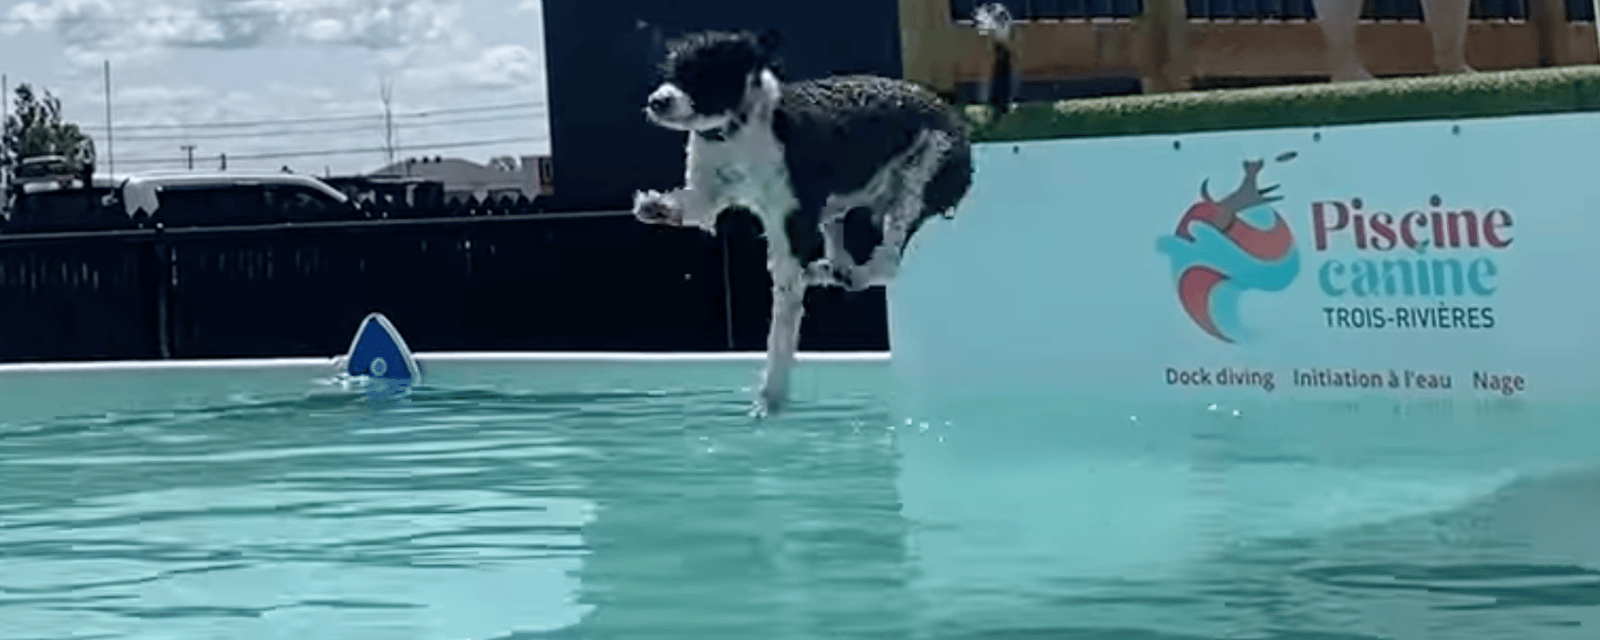 La première piscine pour chiens vient d'ouvrir au Québec